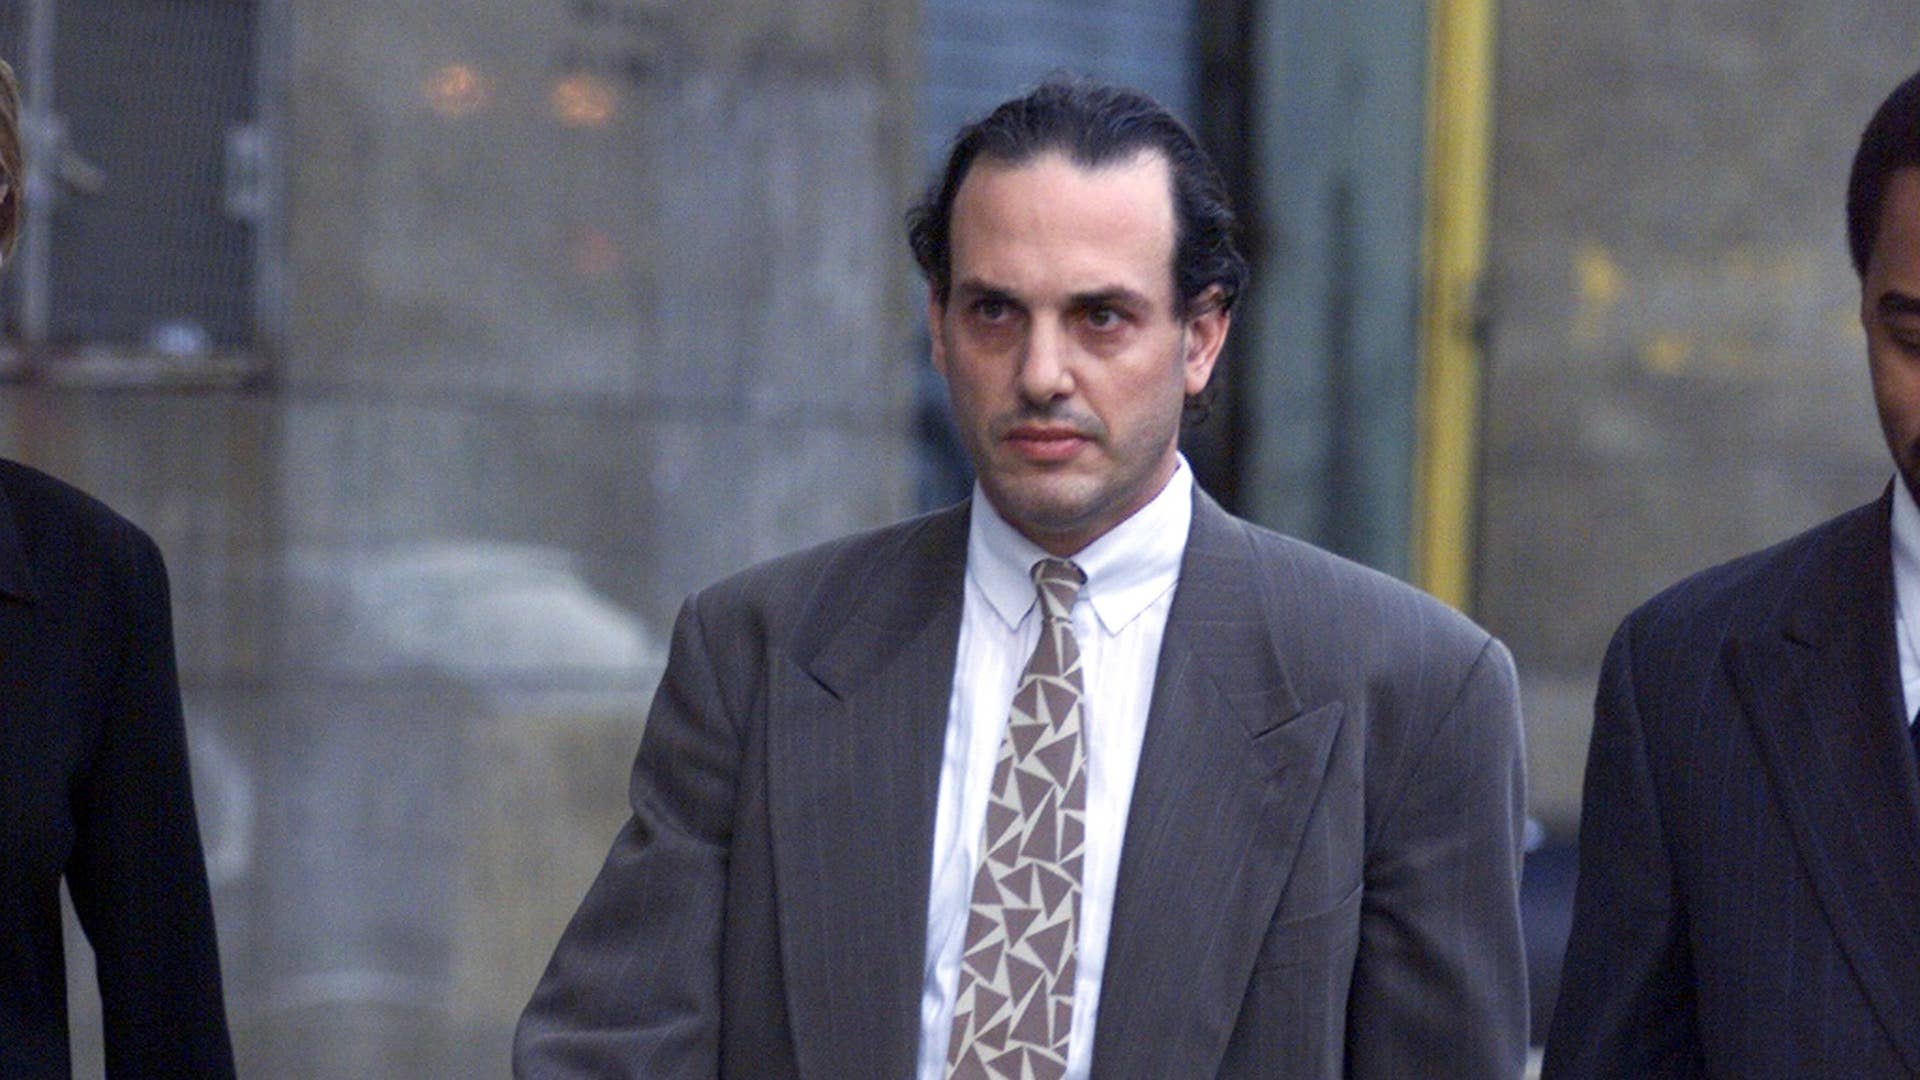 Robert Bierenbaum walks out of Manhattan Criminal Courthouse